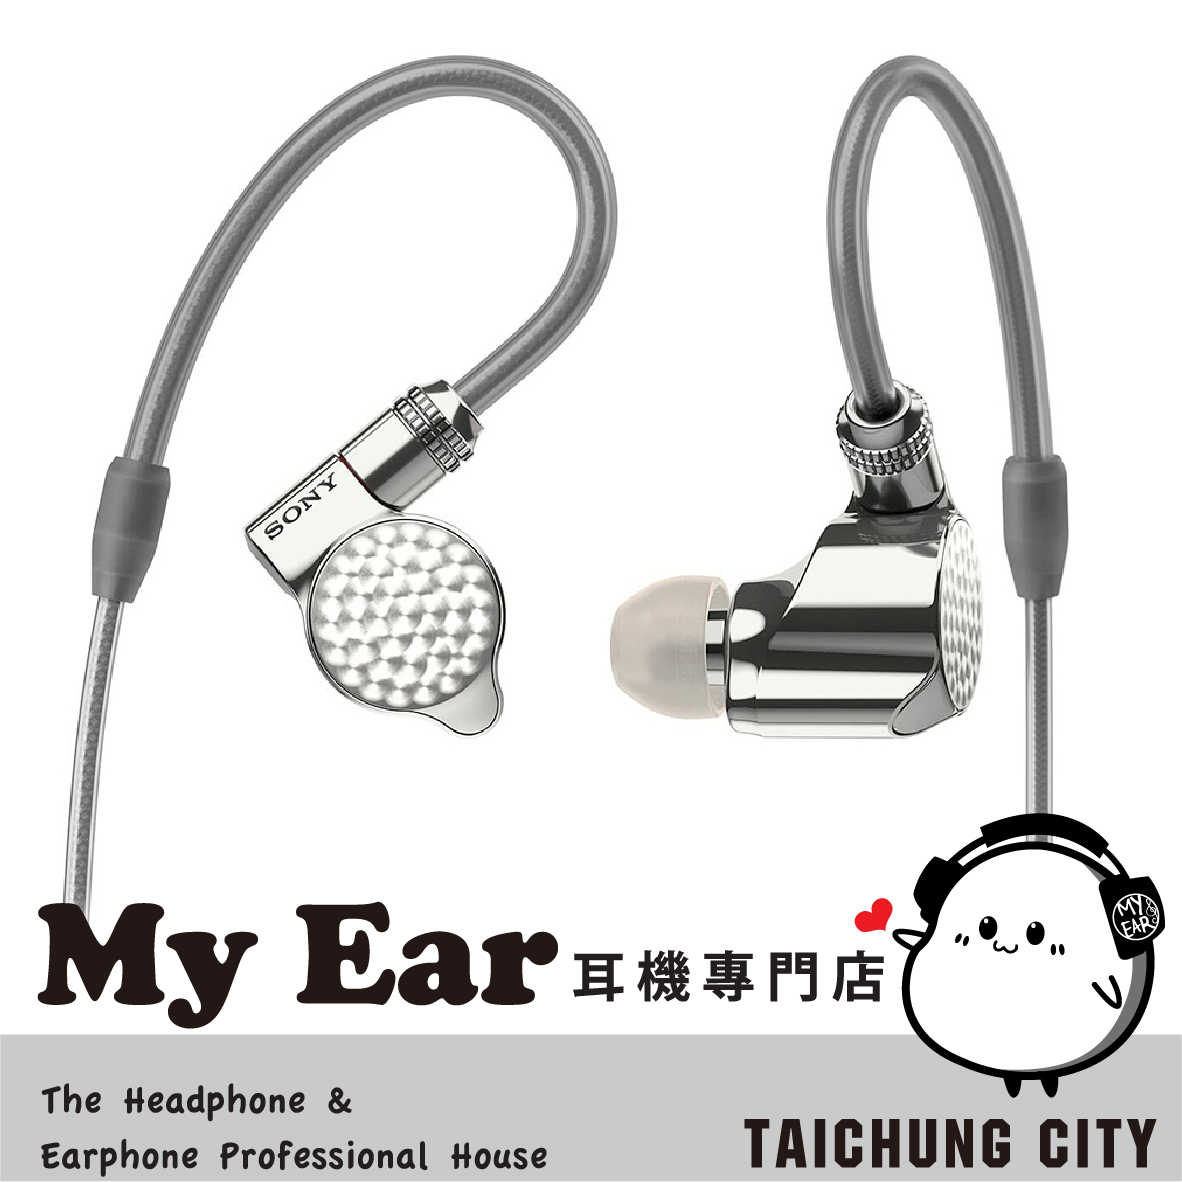 SONY 索尼 IER-Z1R 旗艦 入耳式 耳機 | My Ear 耳機專門店